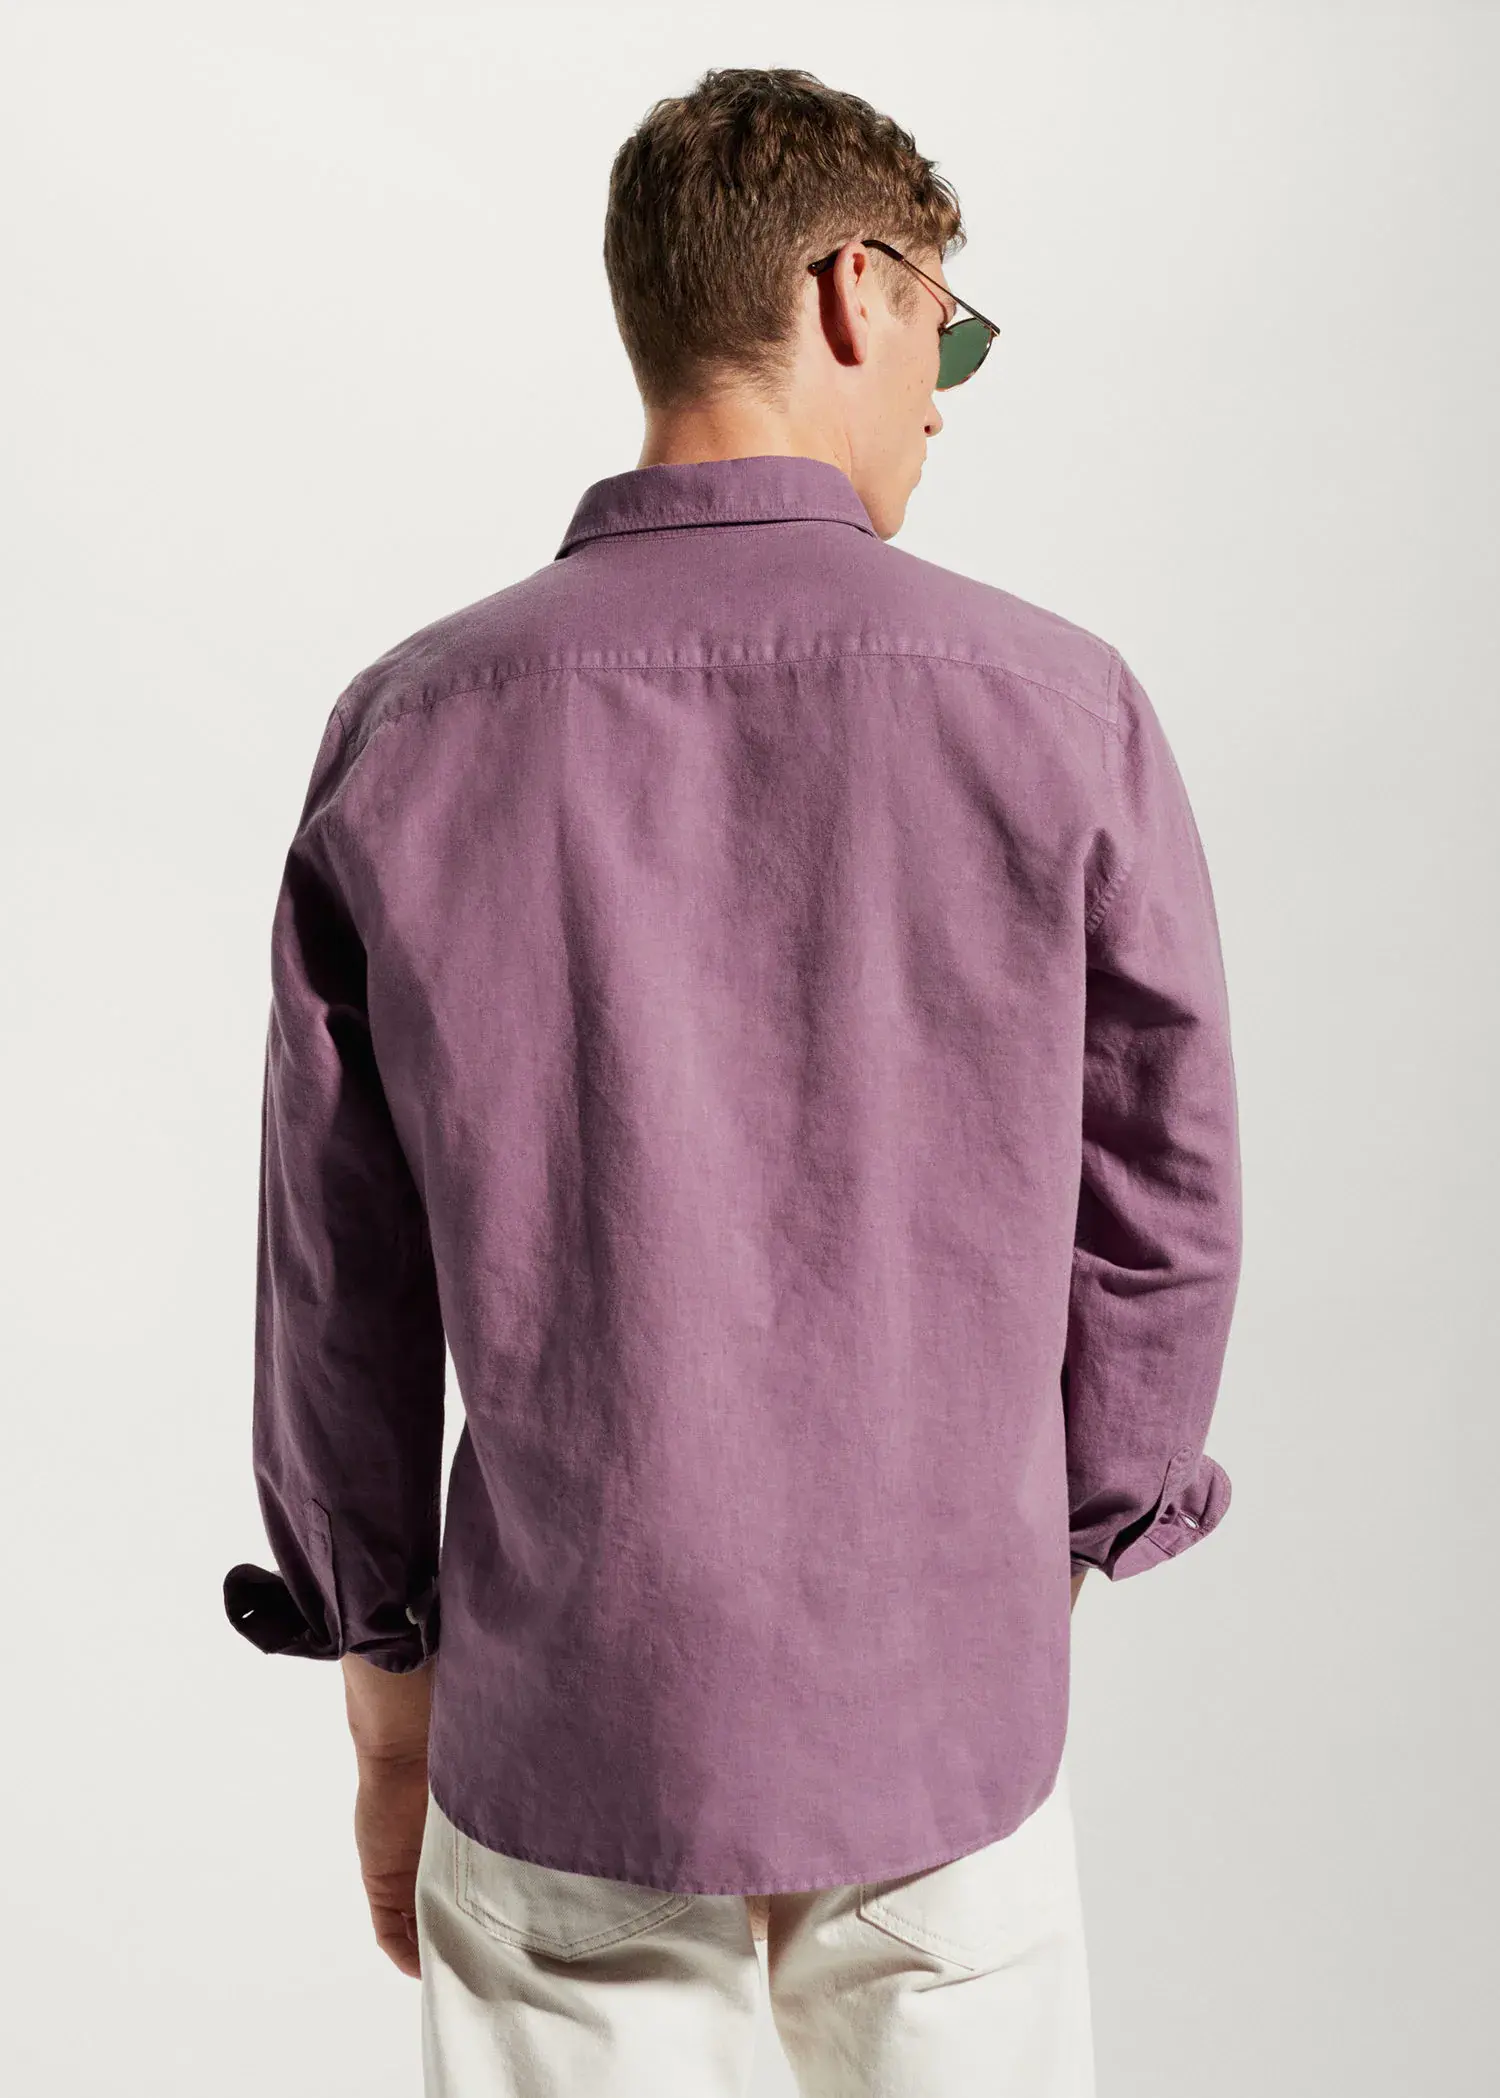 Mango Regular-fit linen cotton shirt. a man wearing a purple shirt and sunglasses. 